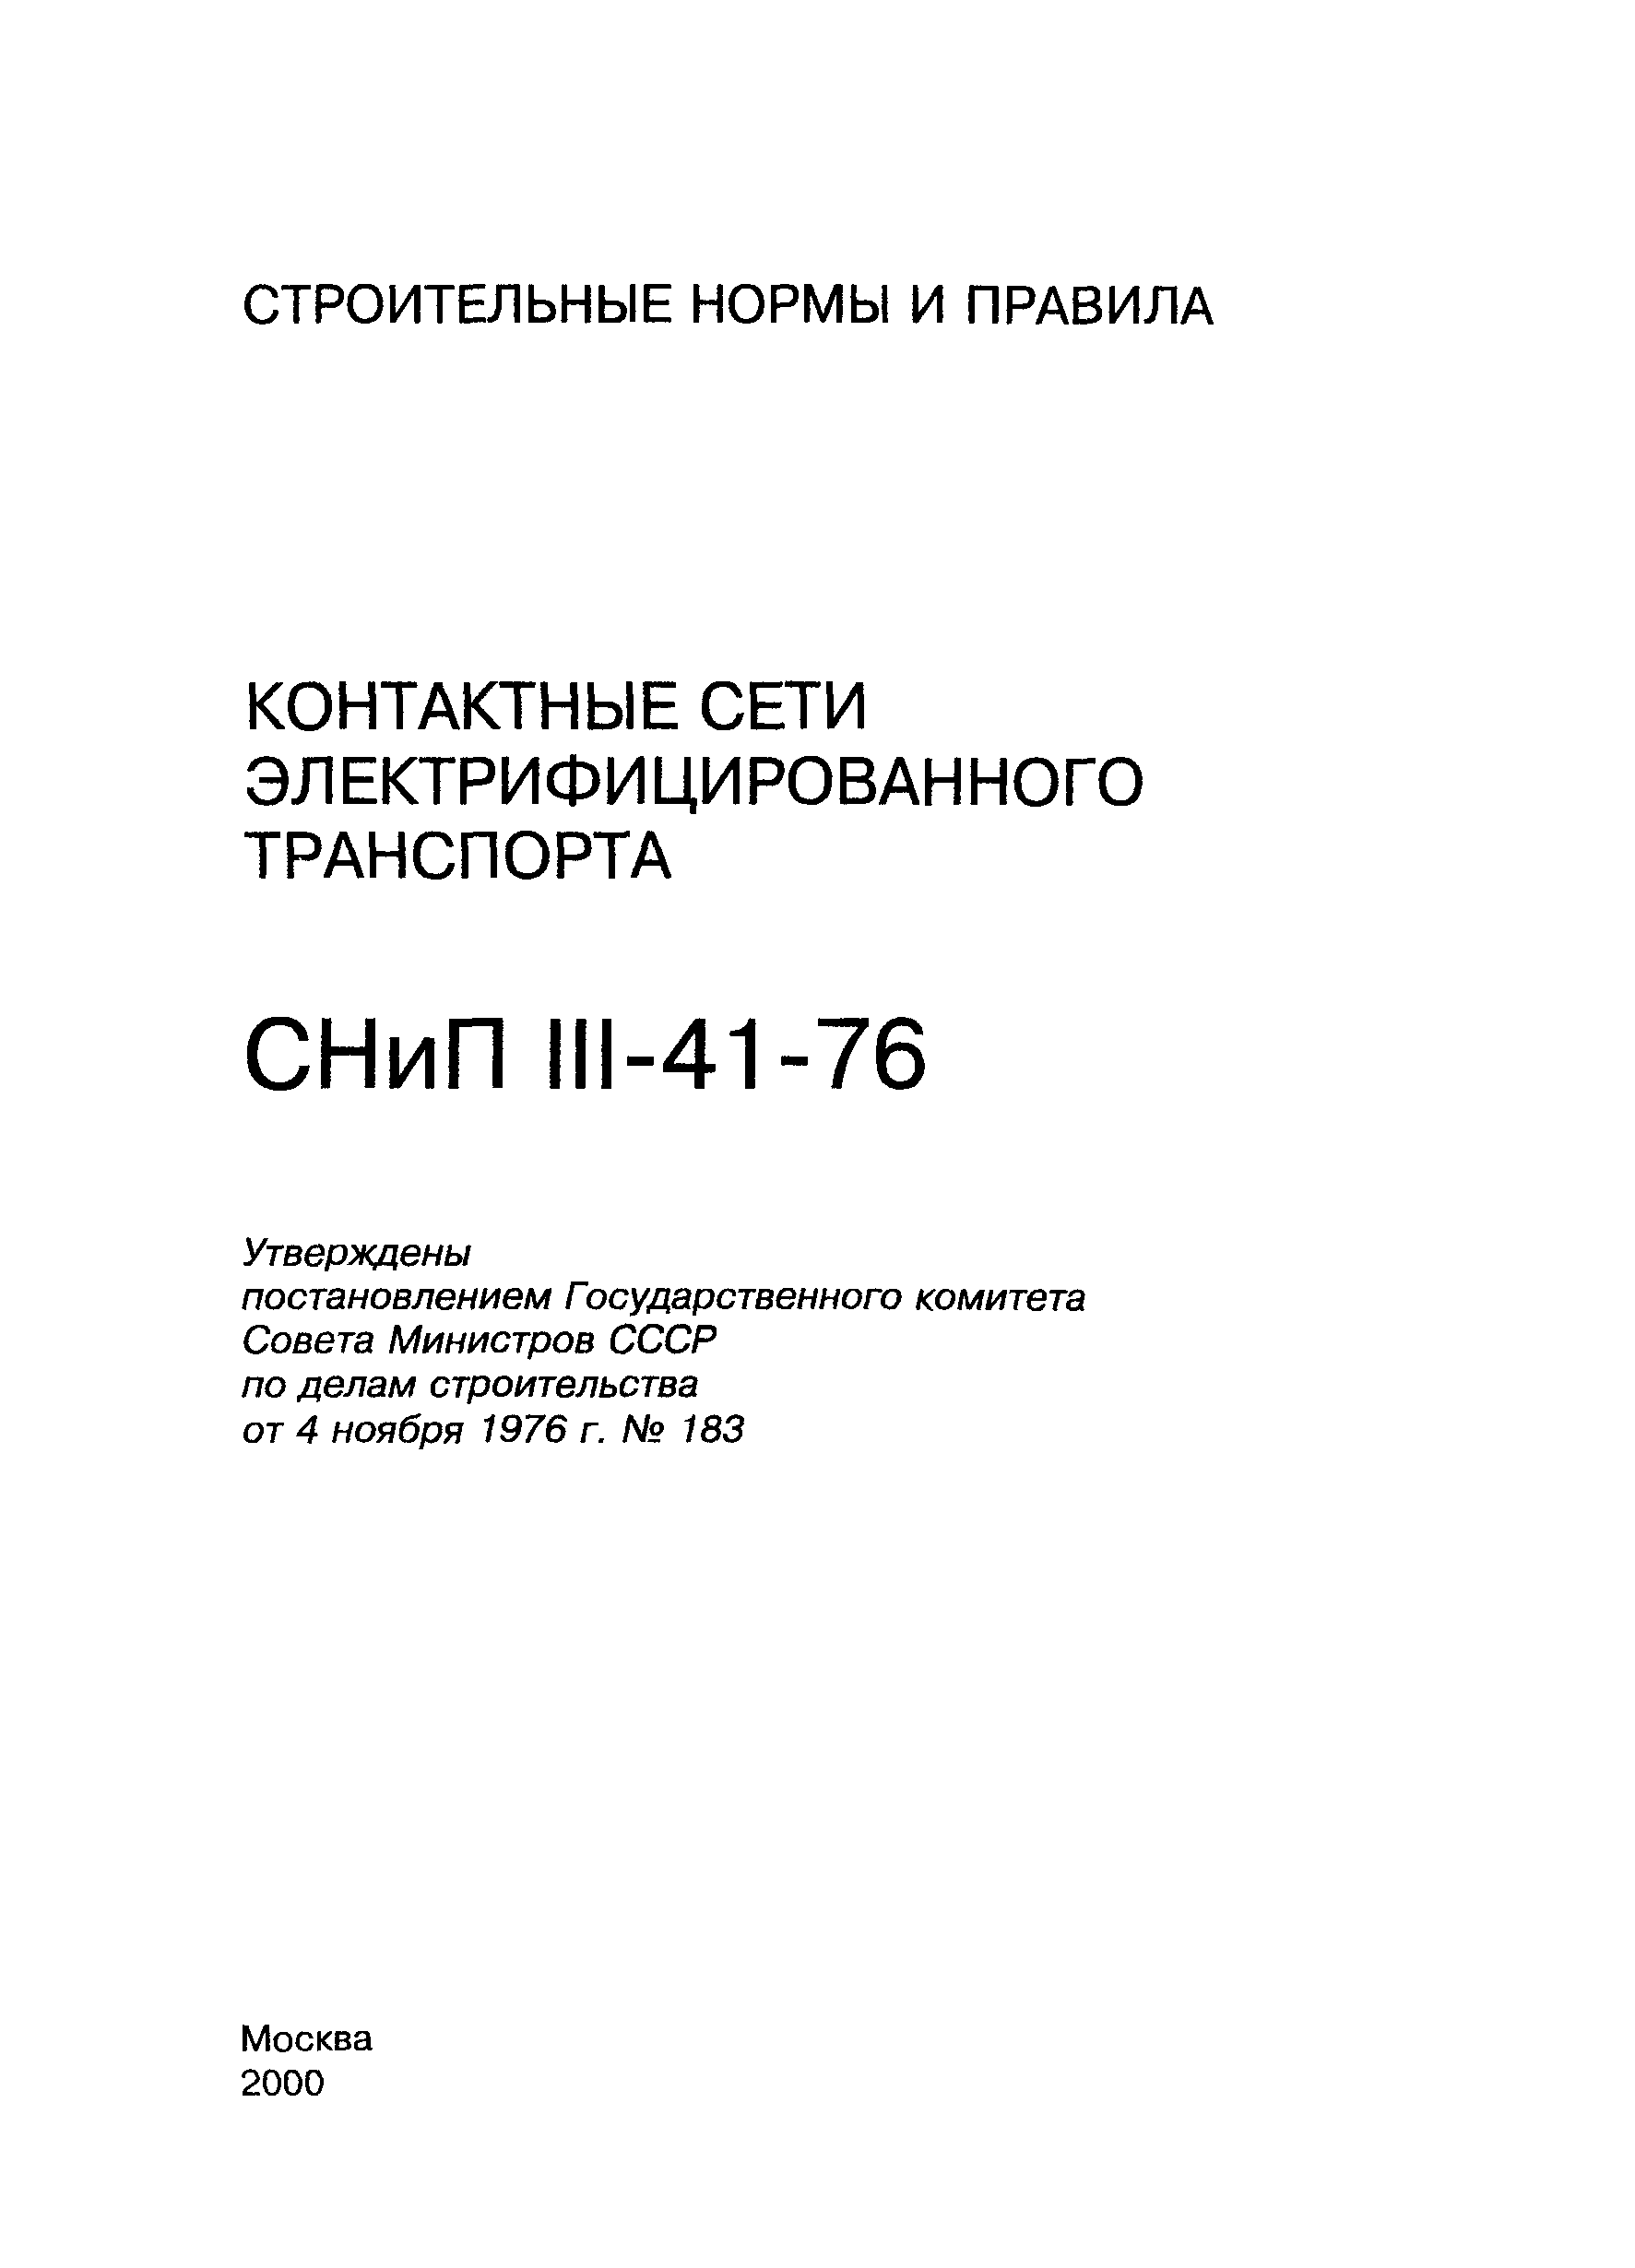 СНиП III-41-76